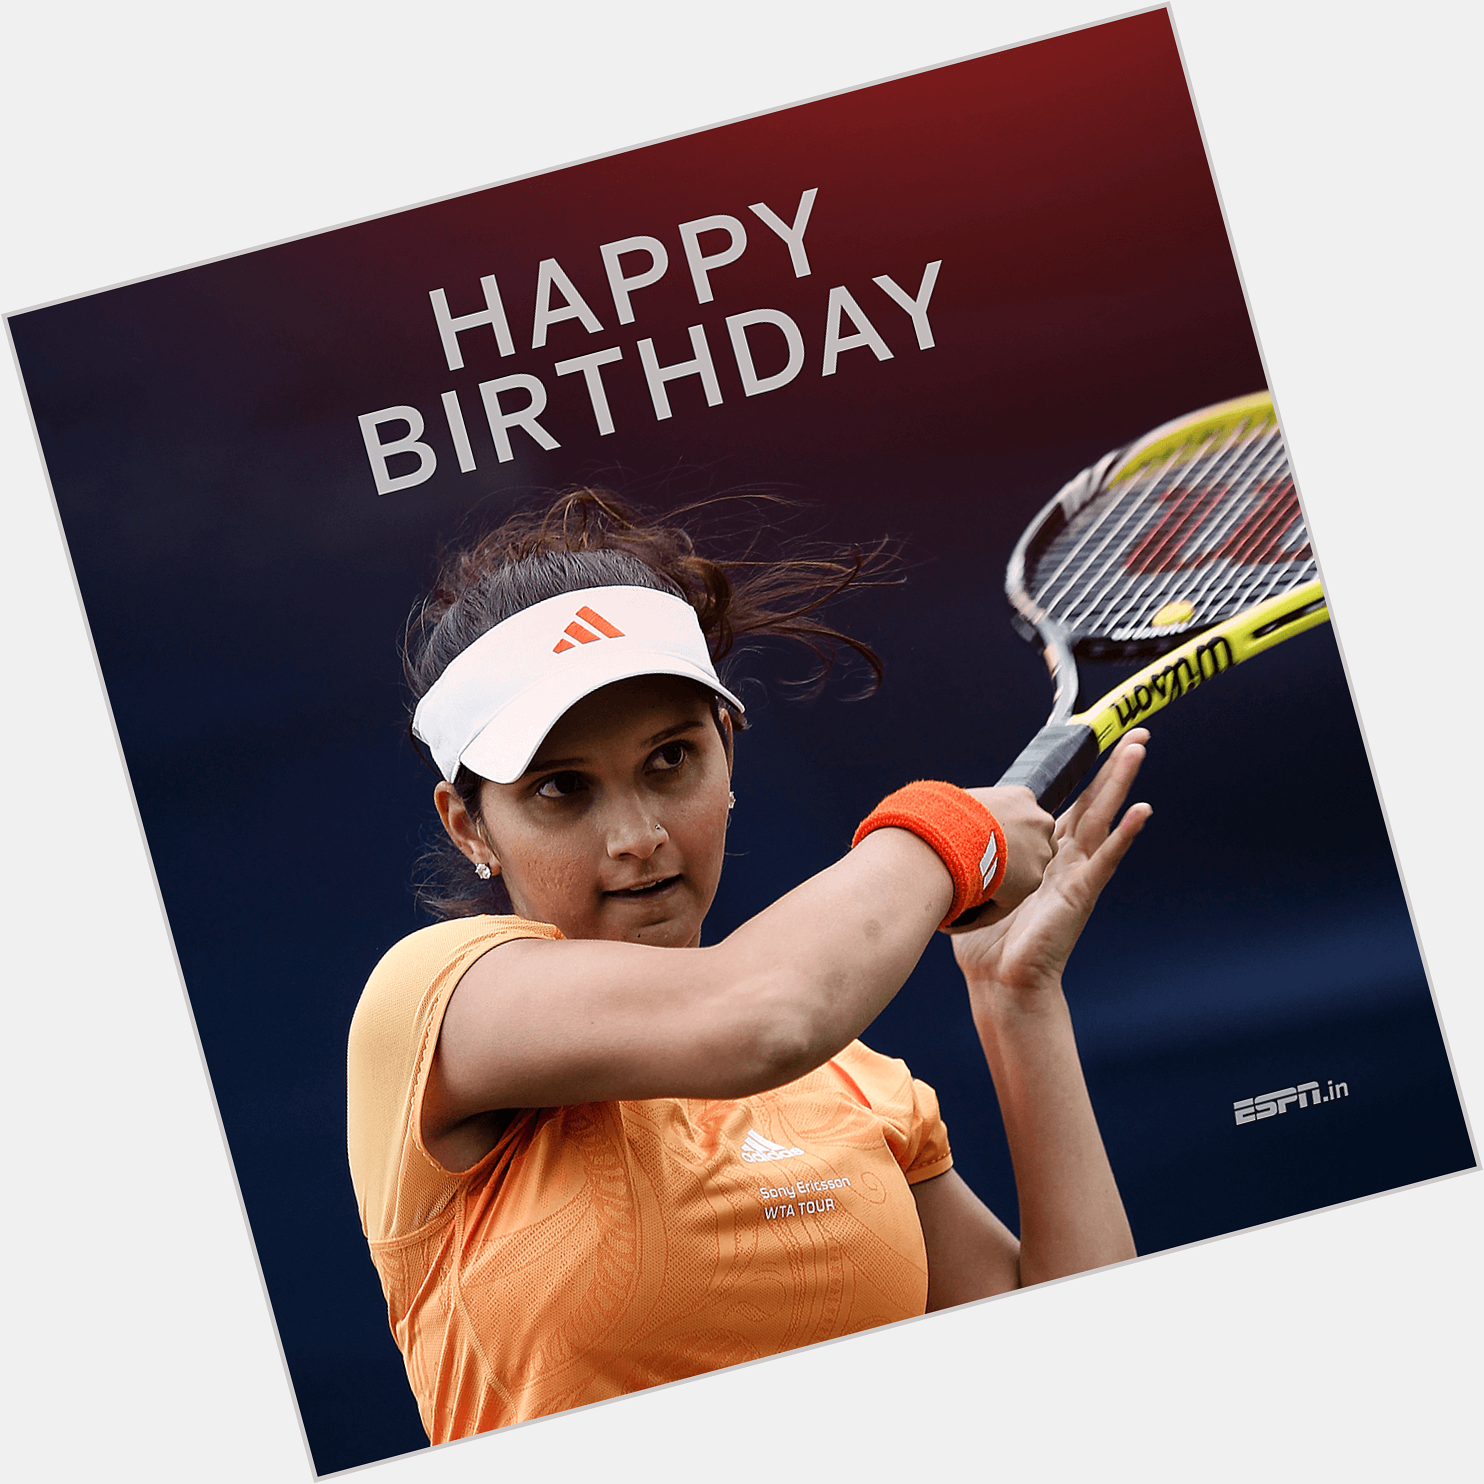 A trailblazer in Indian sport turns 34! Happy birthday, Sania Mirza 